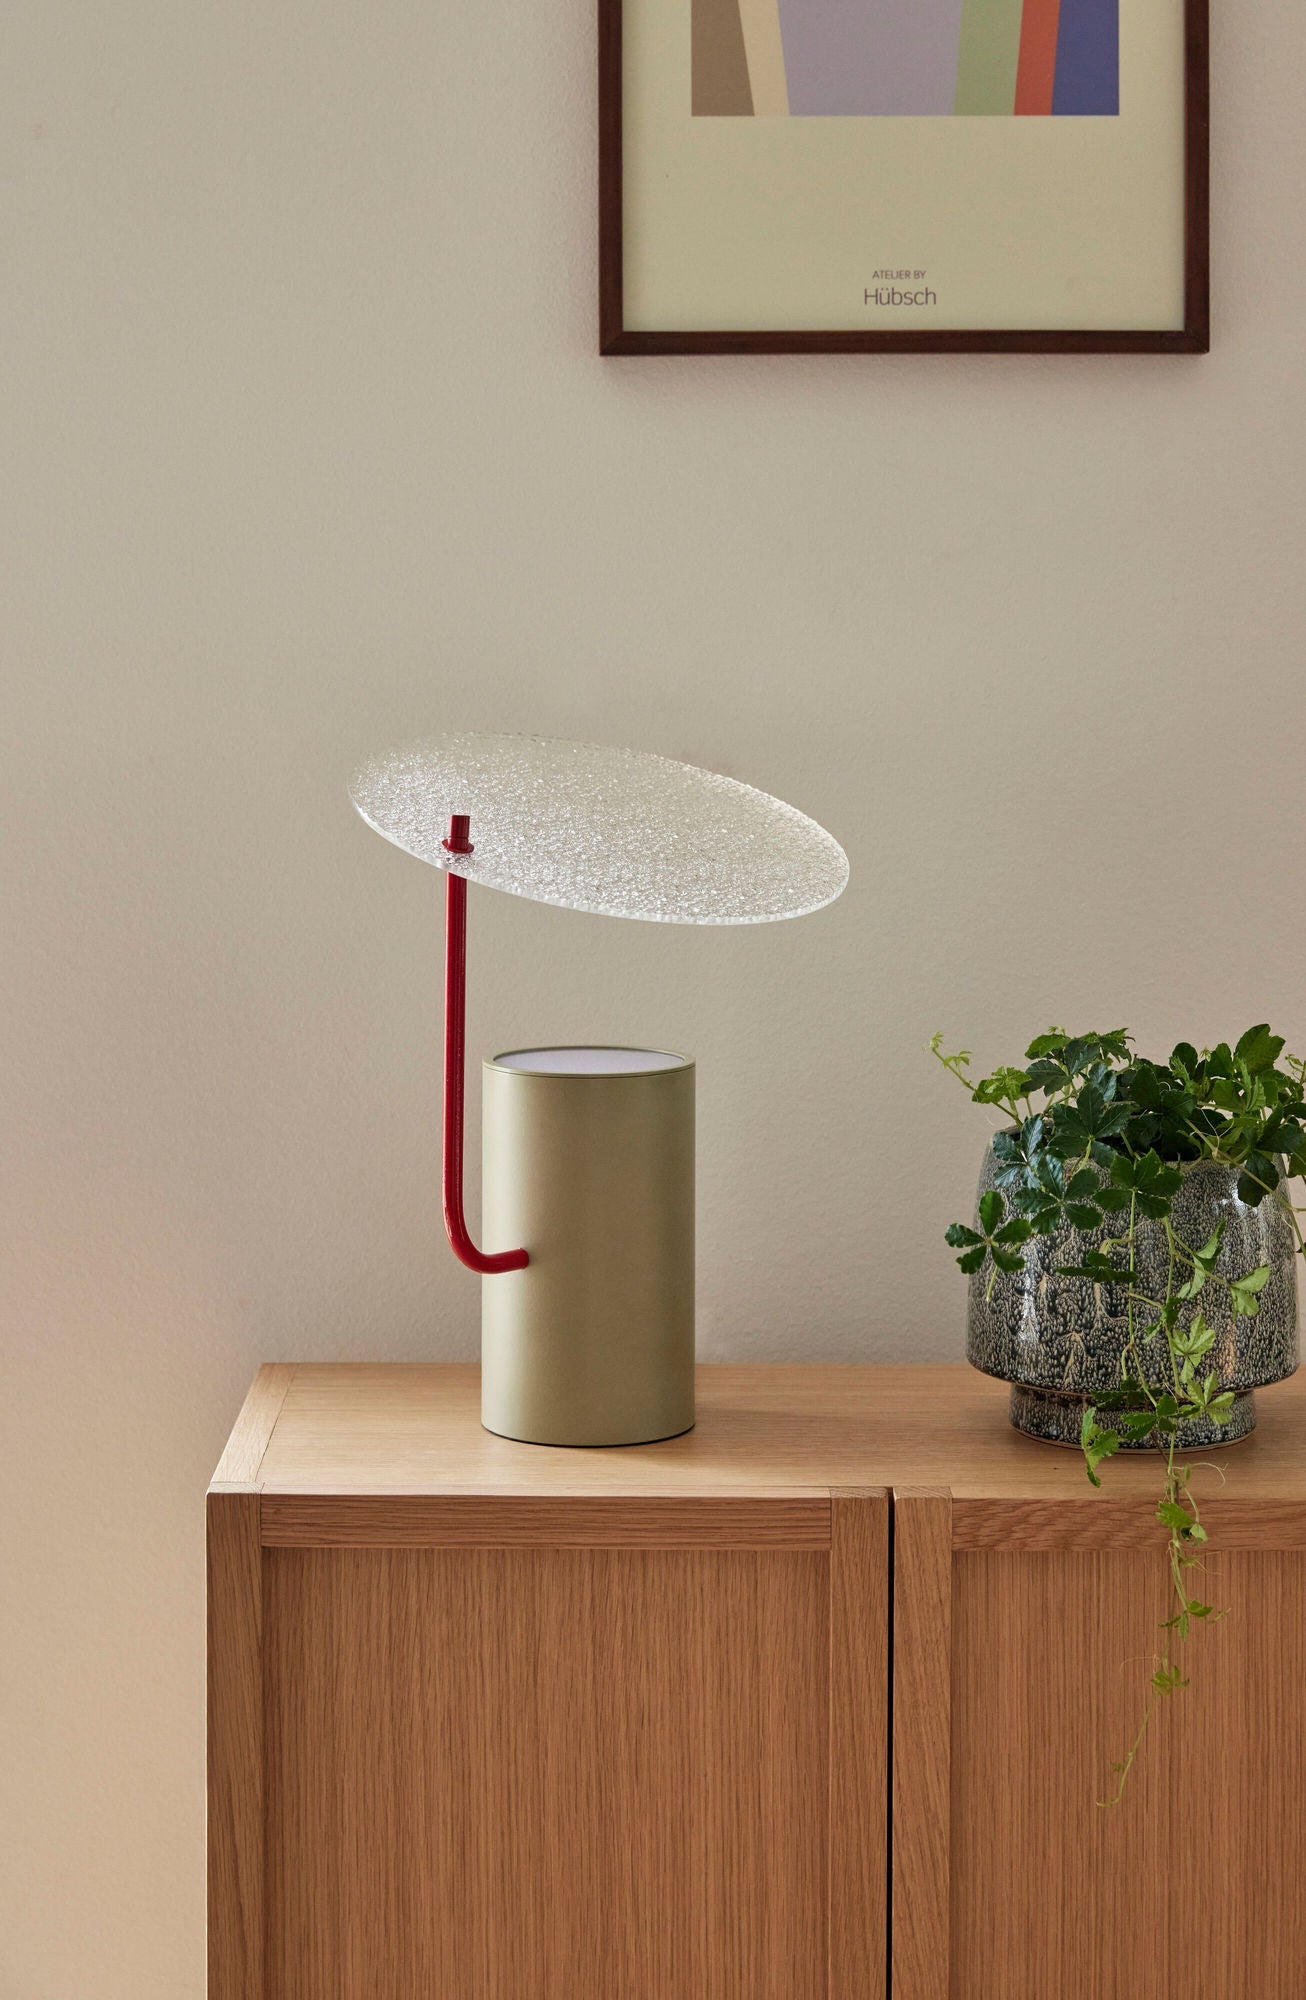 Hübsch -Disc -Tabelle Lampe Khaki/Rot/Textured